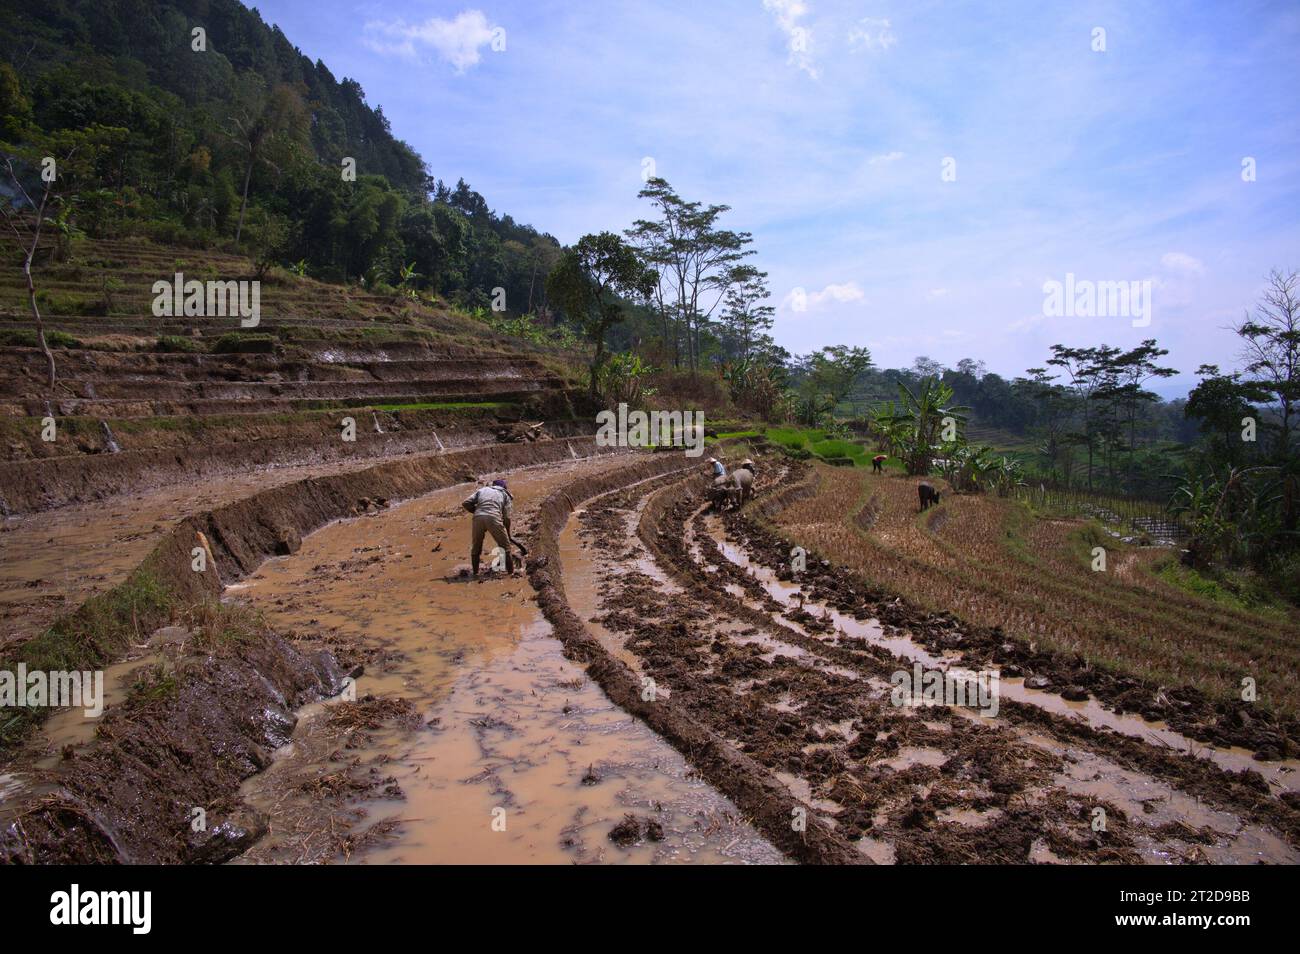 Les personnes travaillant dans les rizières en Indonésie utilisant des animaux de travail Banque D'Images